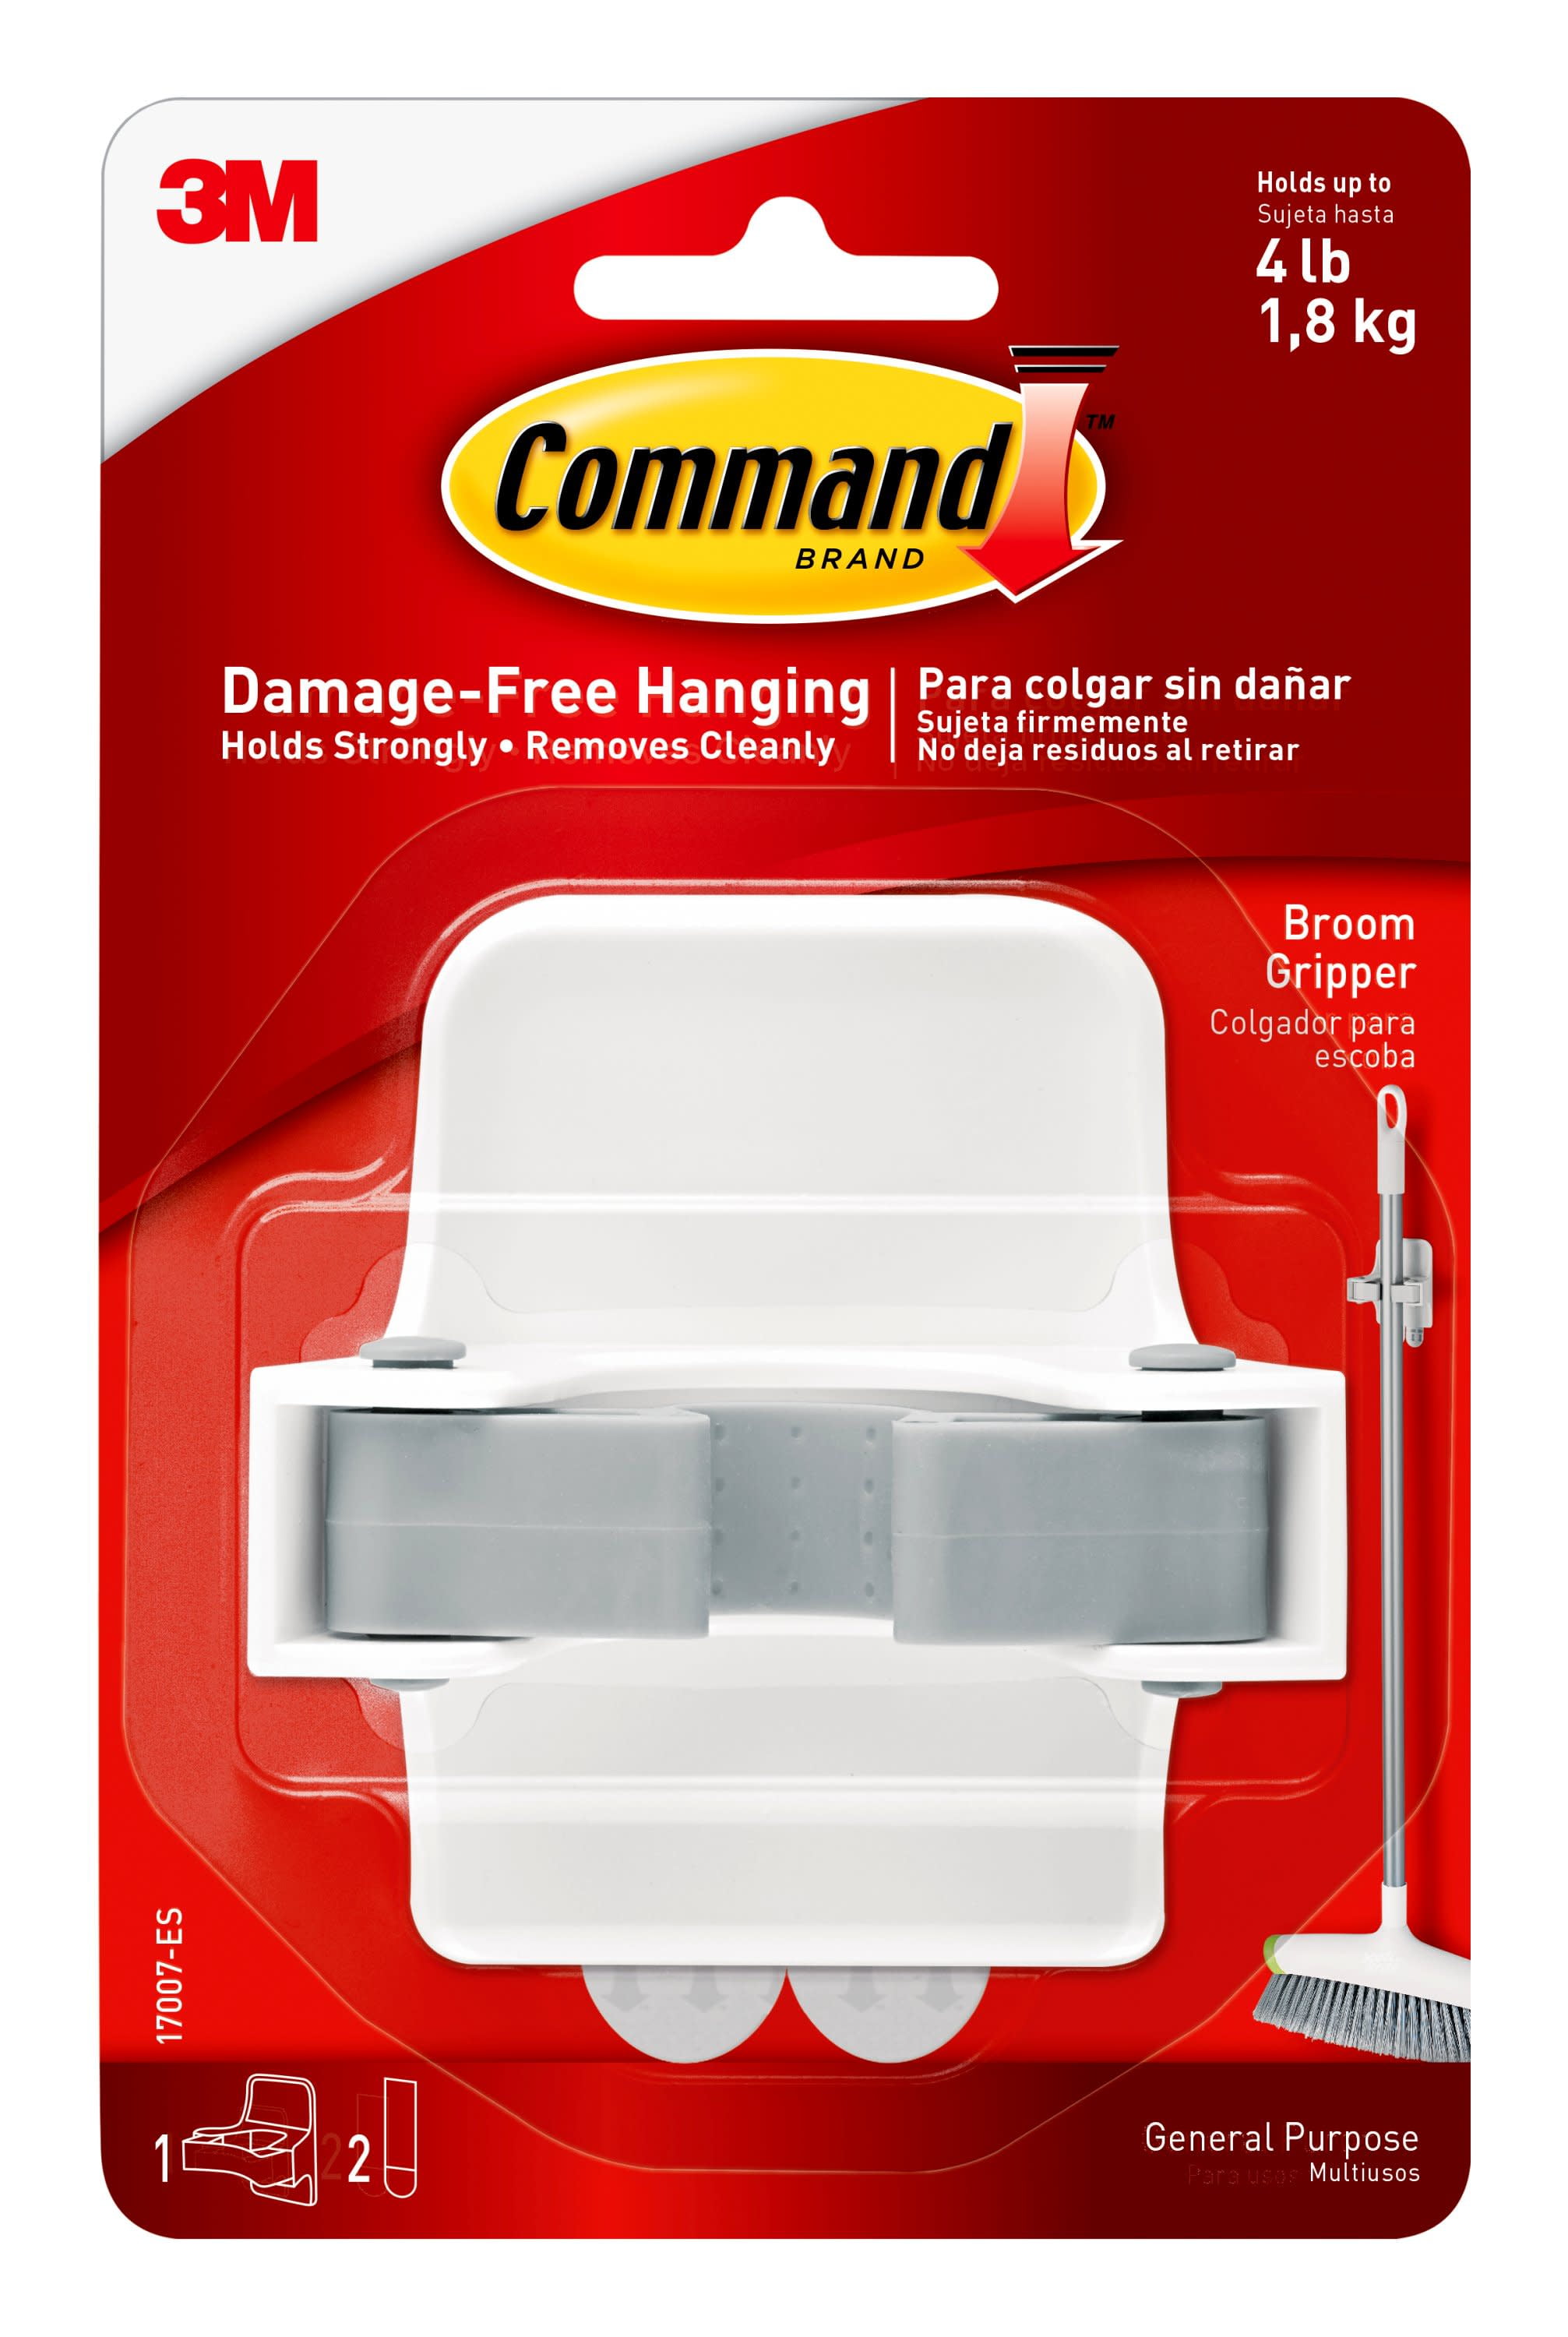 Command 10 Lb XL Heavyweight Wall Hook, White, Damage Free